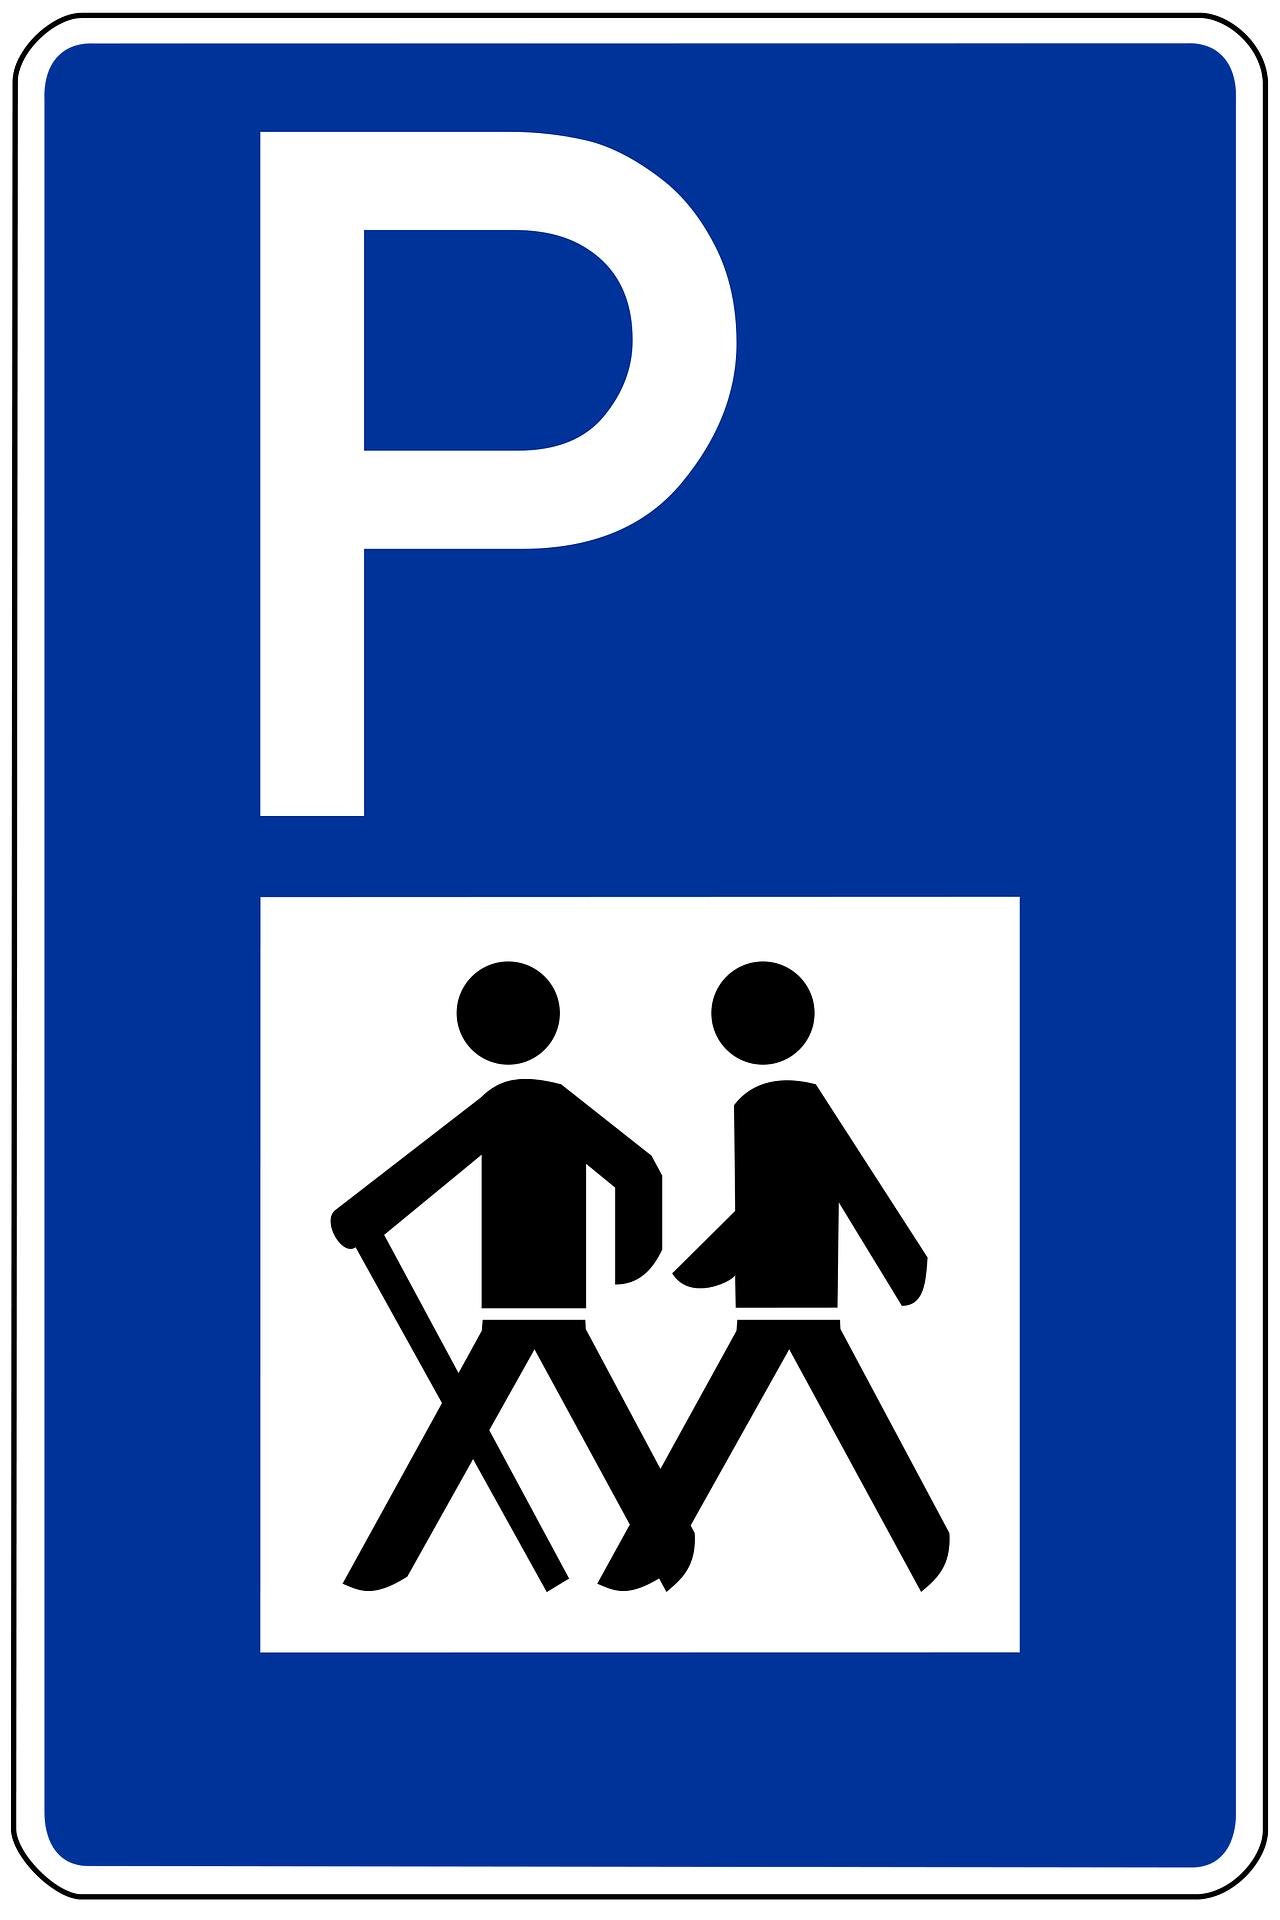 Blaues Schild mit einem weißen P und Wanderern